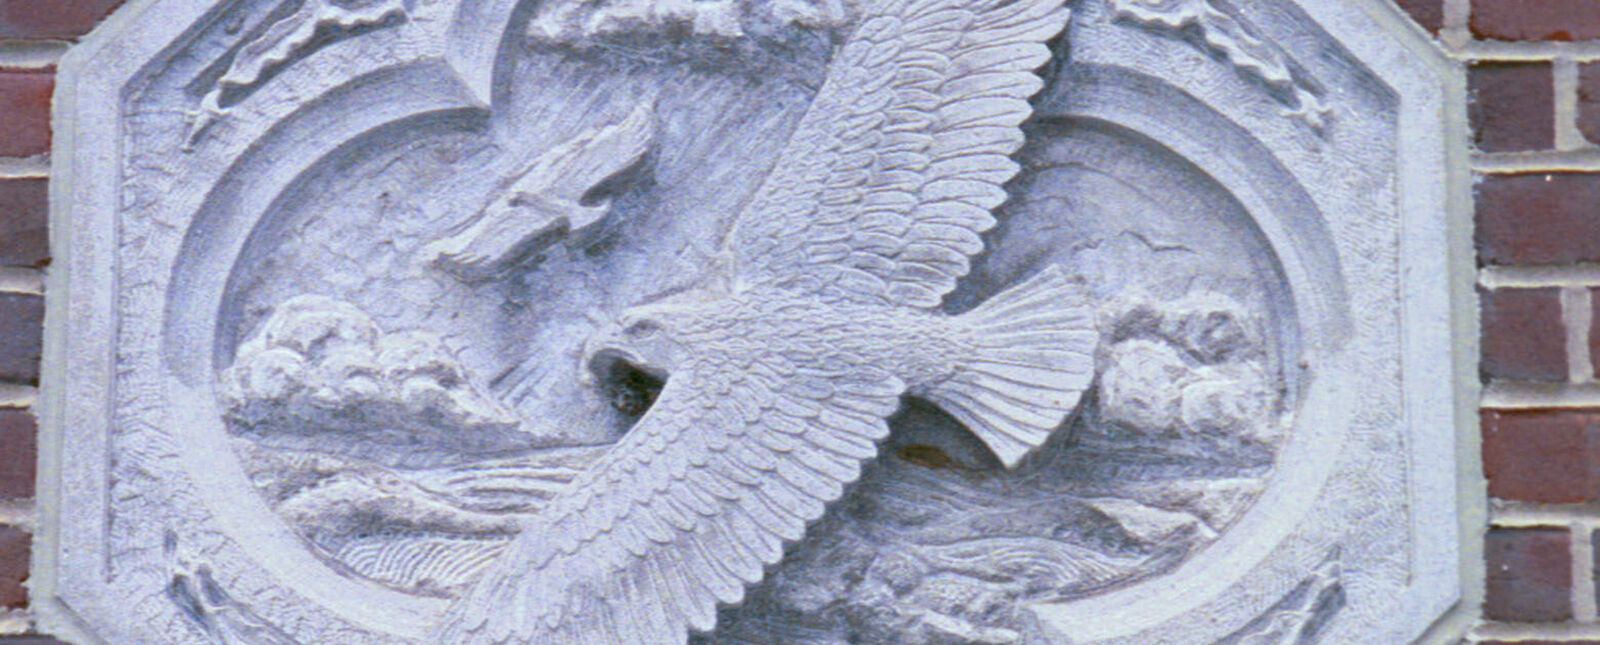 砖墙上镶嵌着刻有鹰和风景的八角形石头